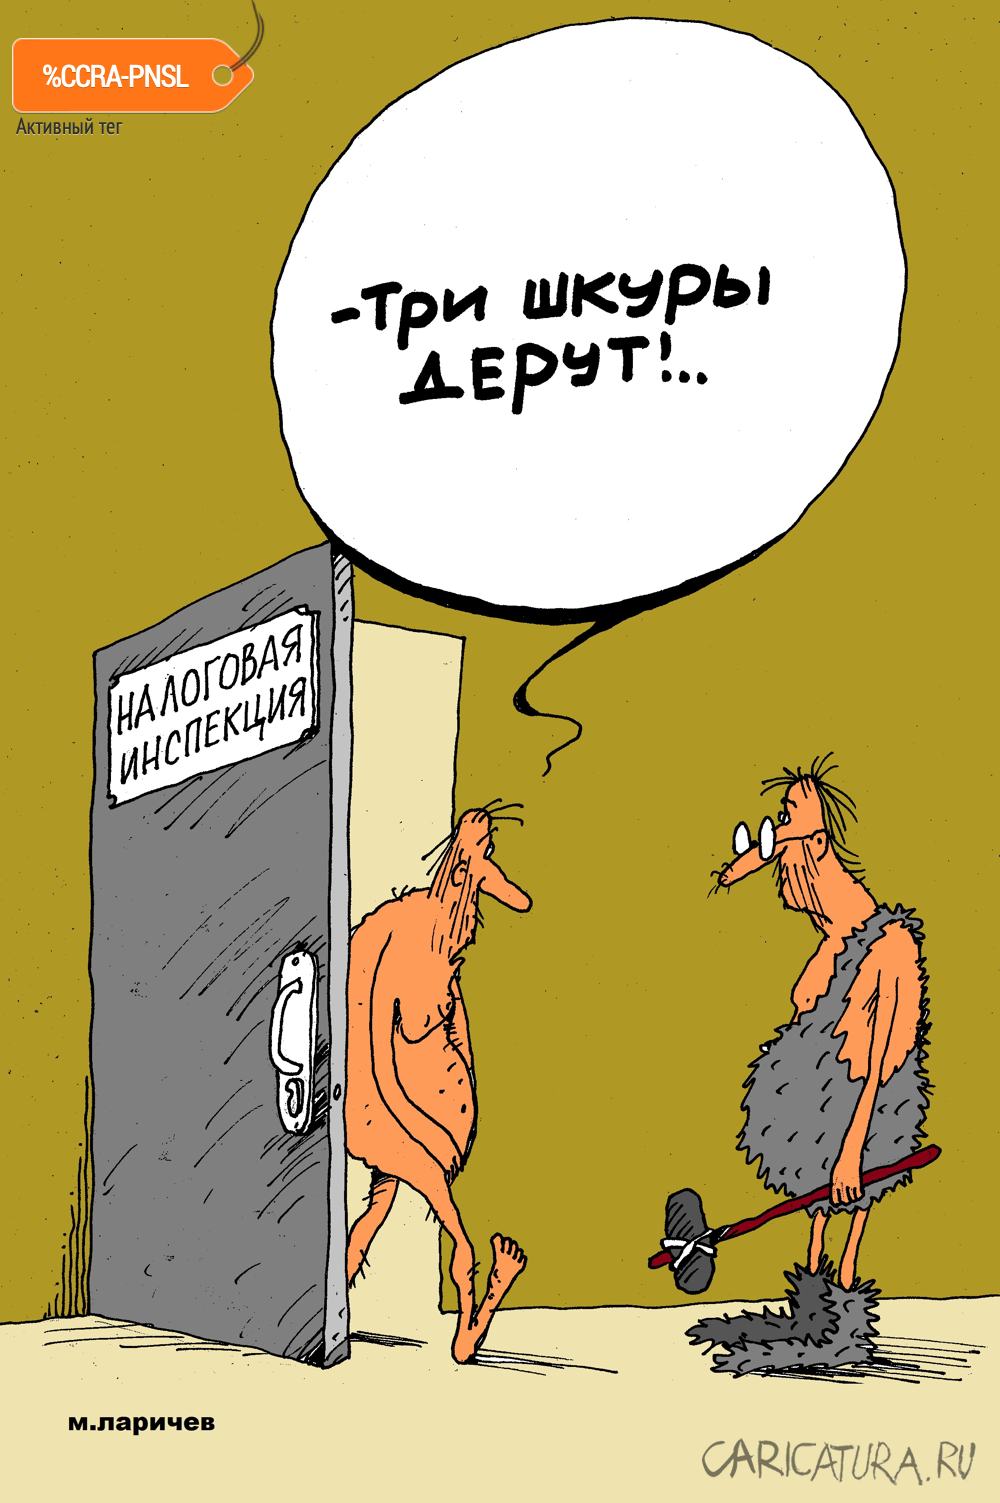 Карикатура "Шкуры", Михаил Ларичев